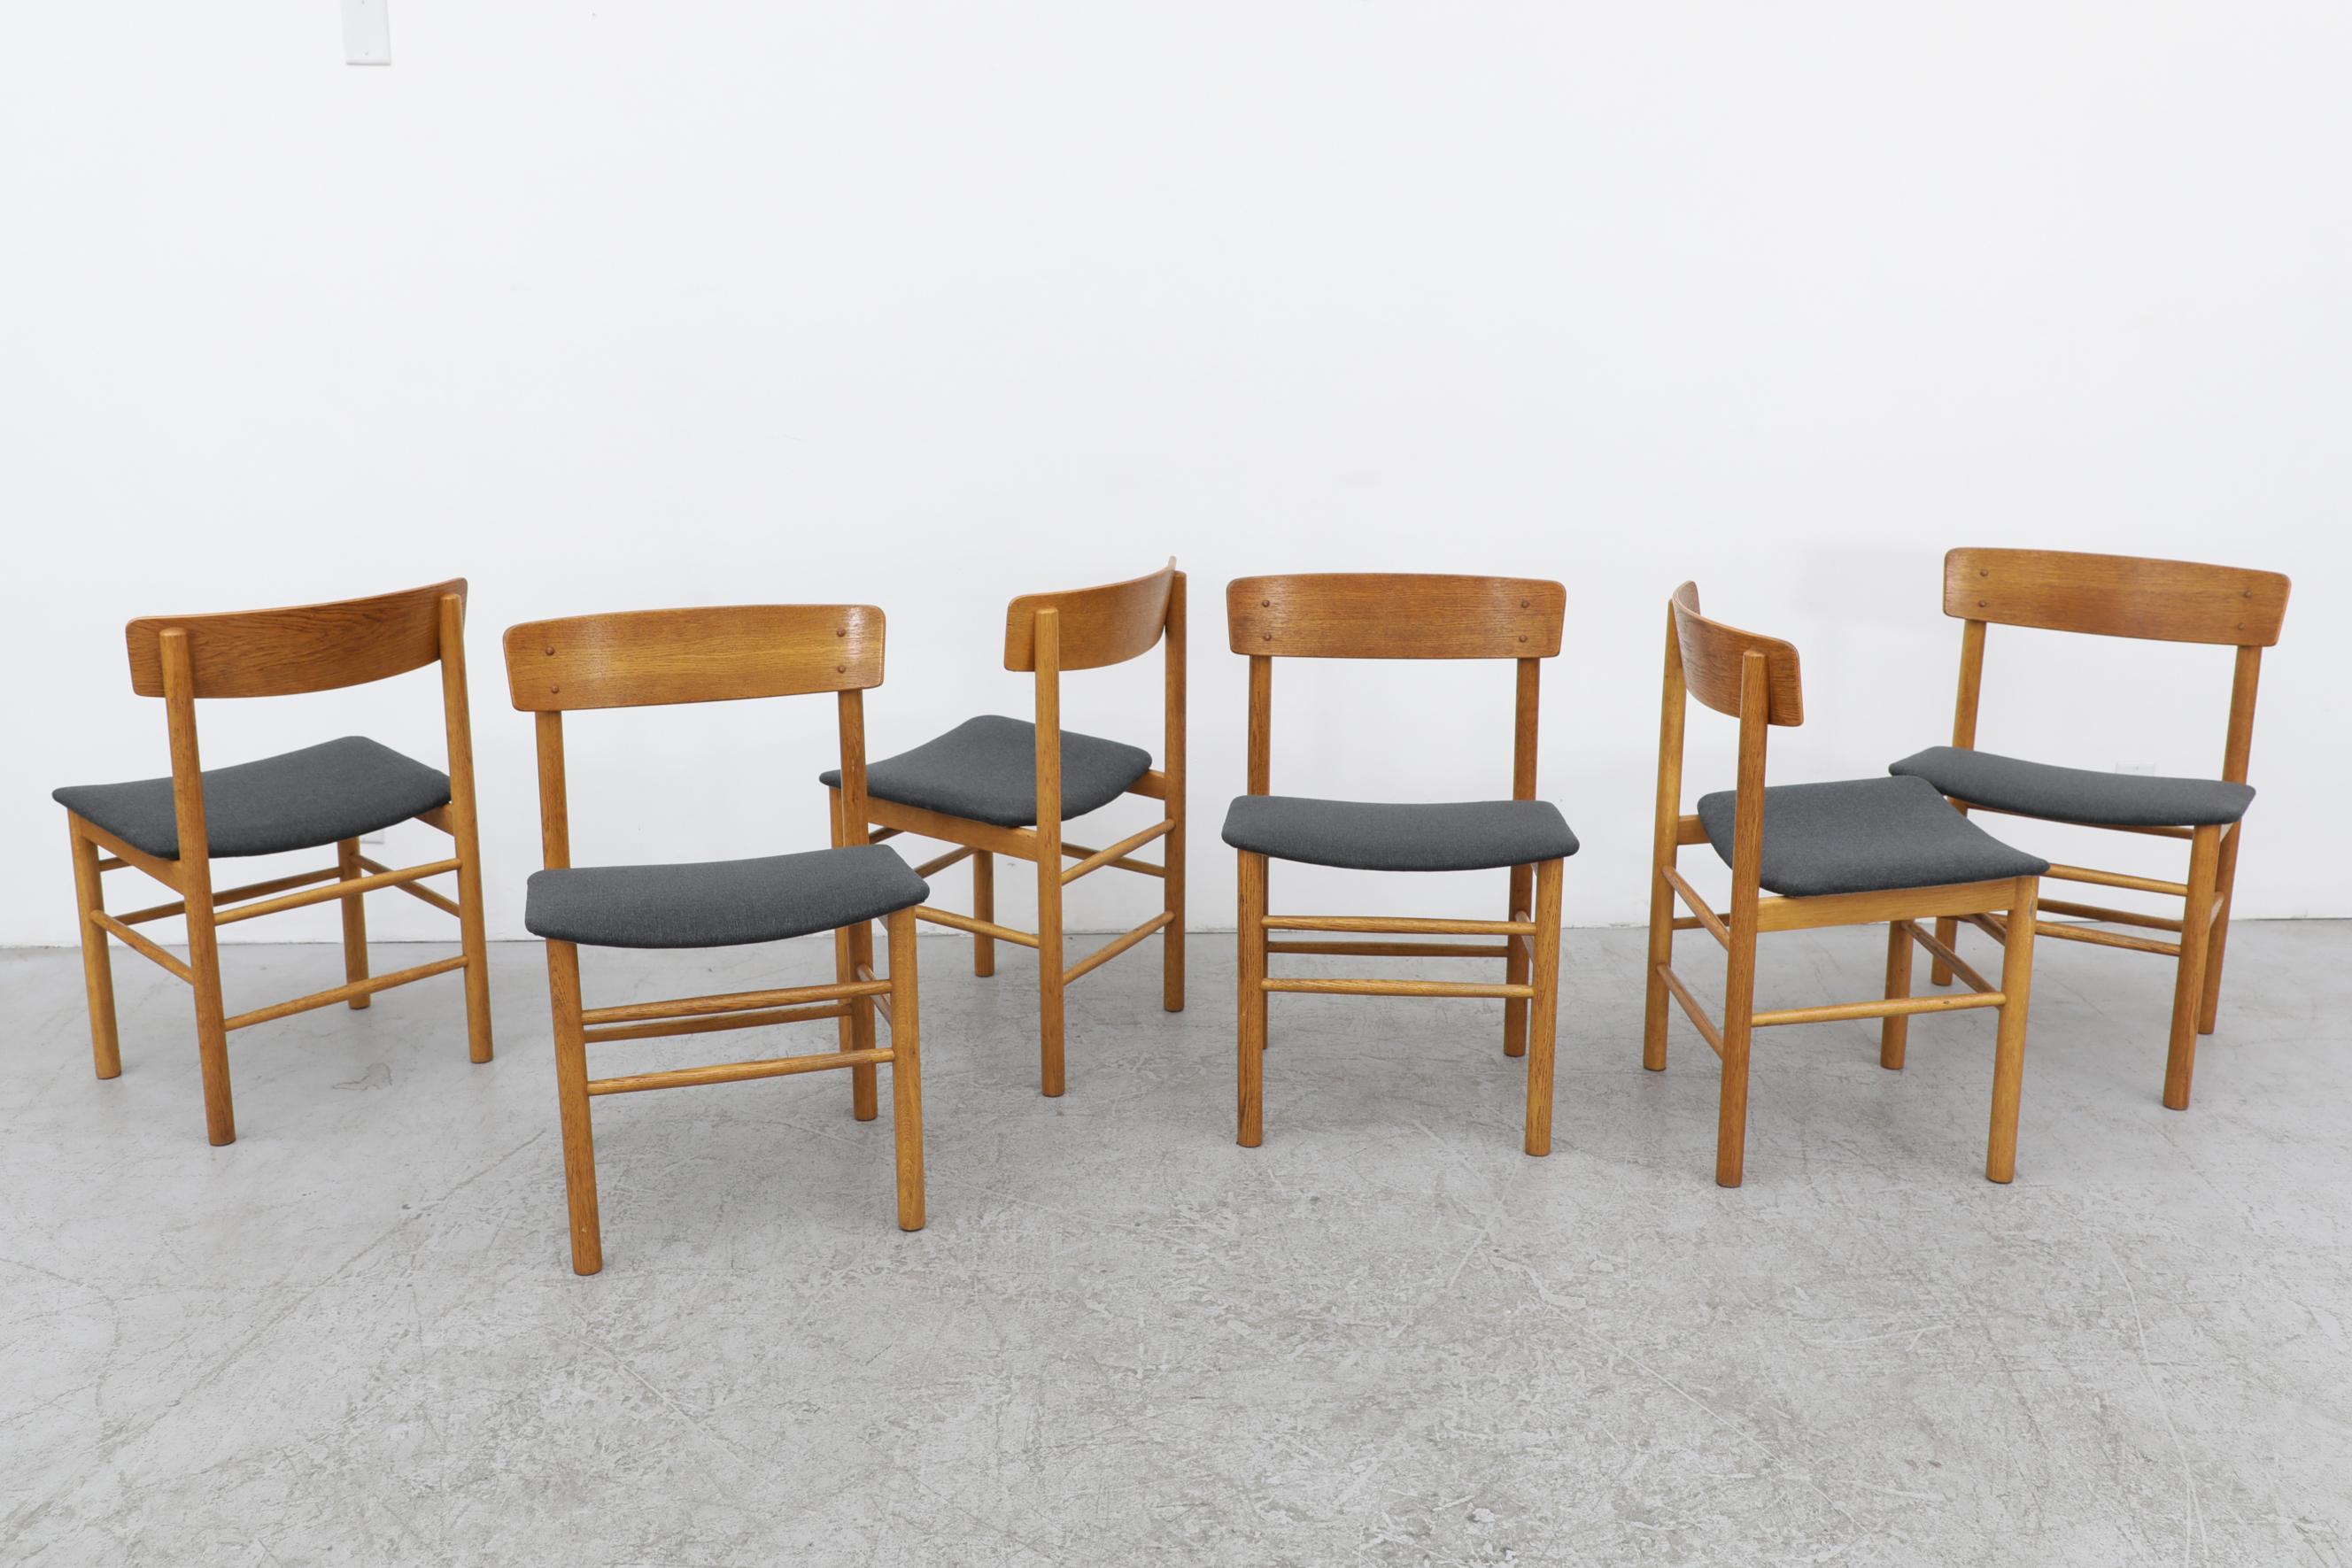 Satz von 6 Børge Mogensen Eichenstühlen Modell 3236. Mogensen wurde 1955 Designchef bei Fredericia, und einer seiner ersten Erfolge war der 3236 Chair, der 1956 auf den Markt kam. Der robuste, aber elegant konstruierte Stuhl zeigt die Vorliebe des